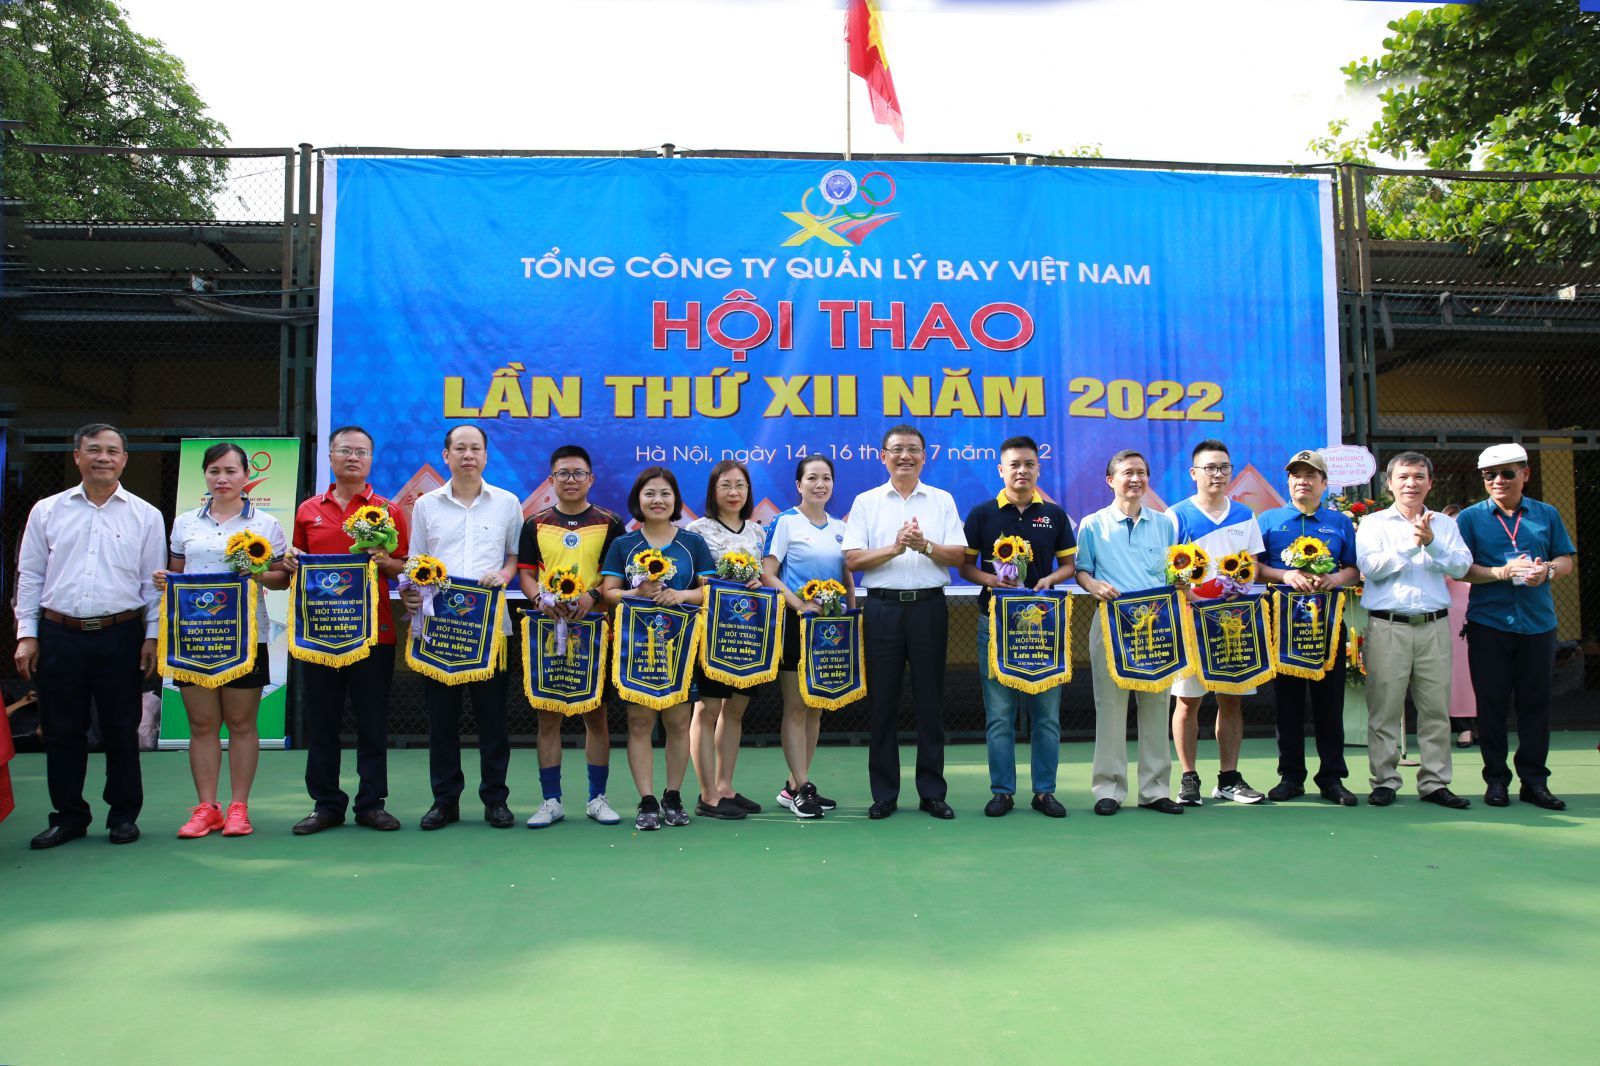 Khai mạc Hội thao Tổng công ty Quản lý bay Việt Nam năm 2022